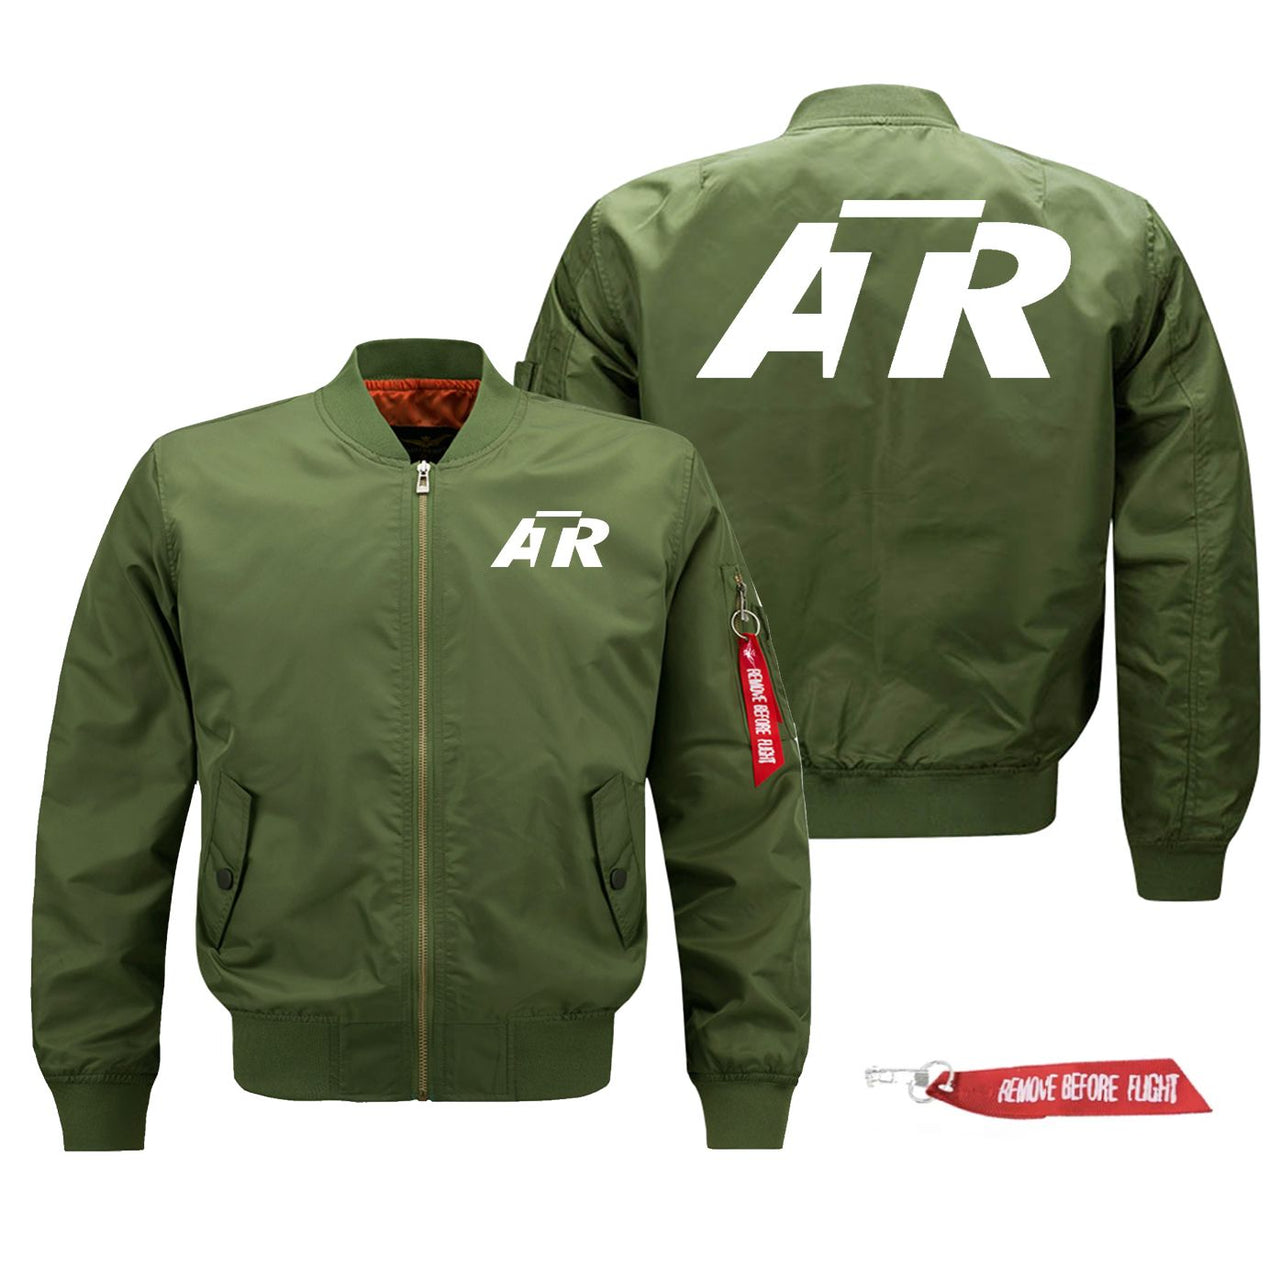 ATR & Text Designed Pilot Jackets (Customizable)